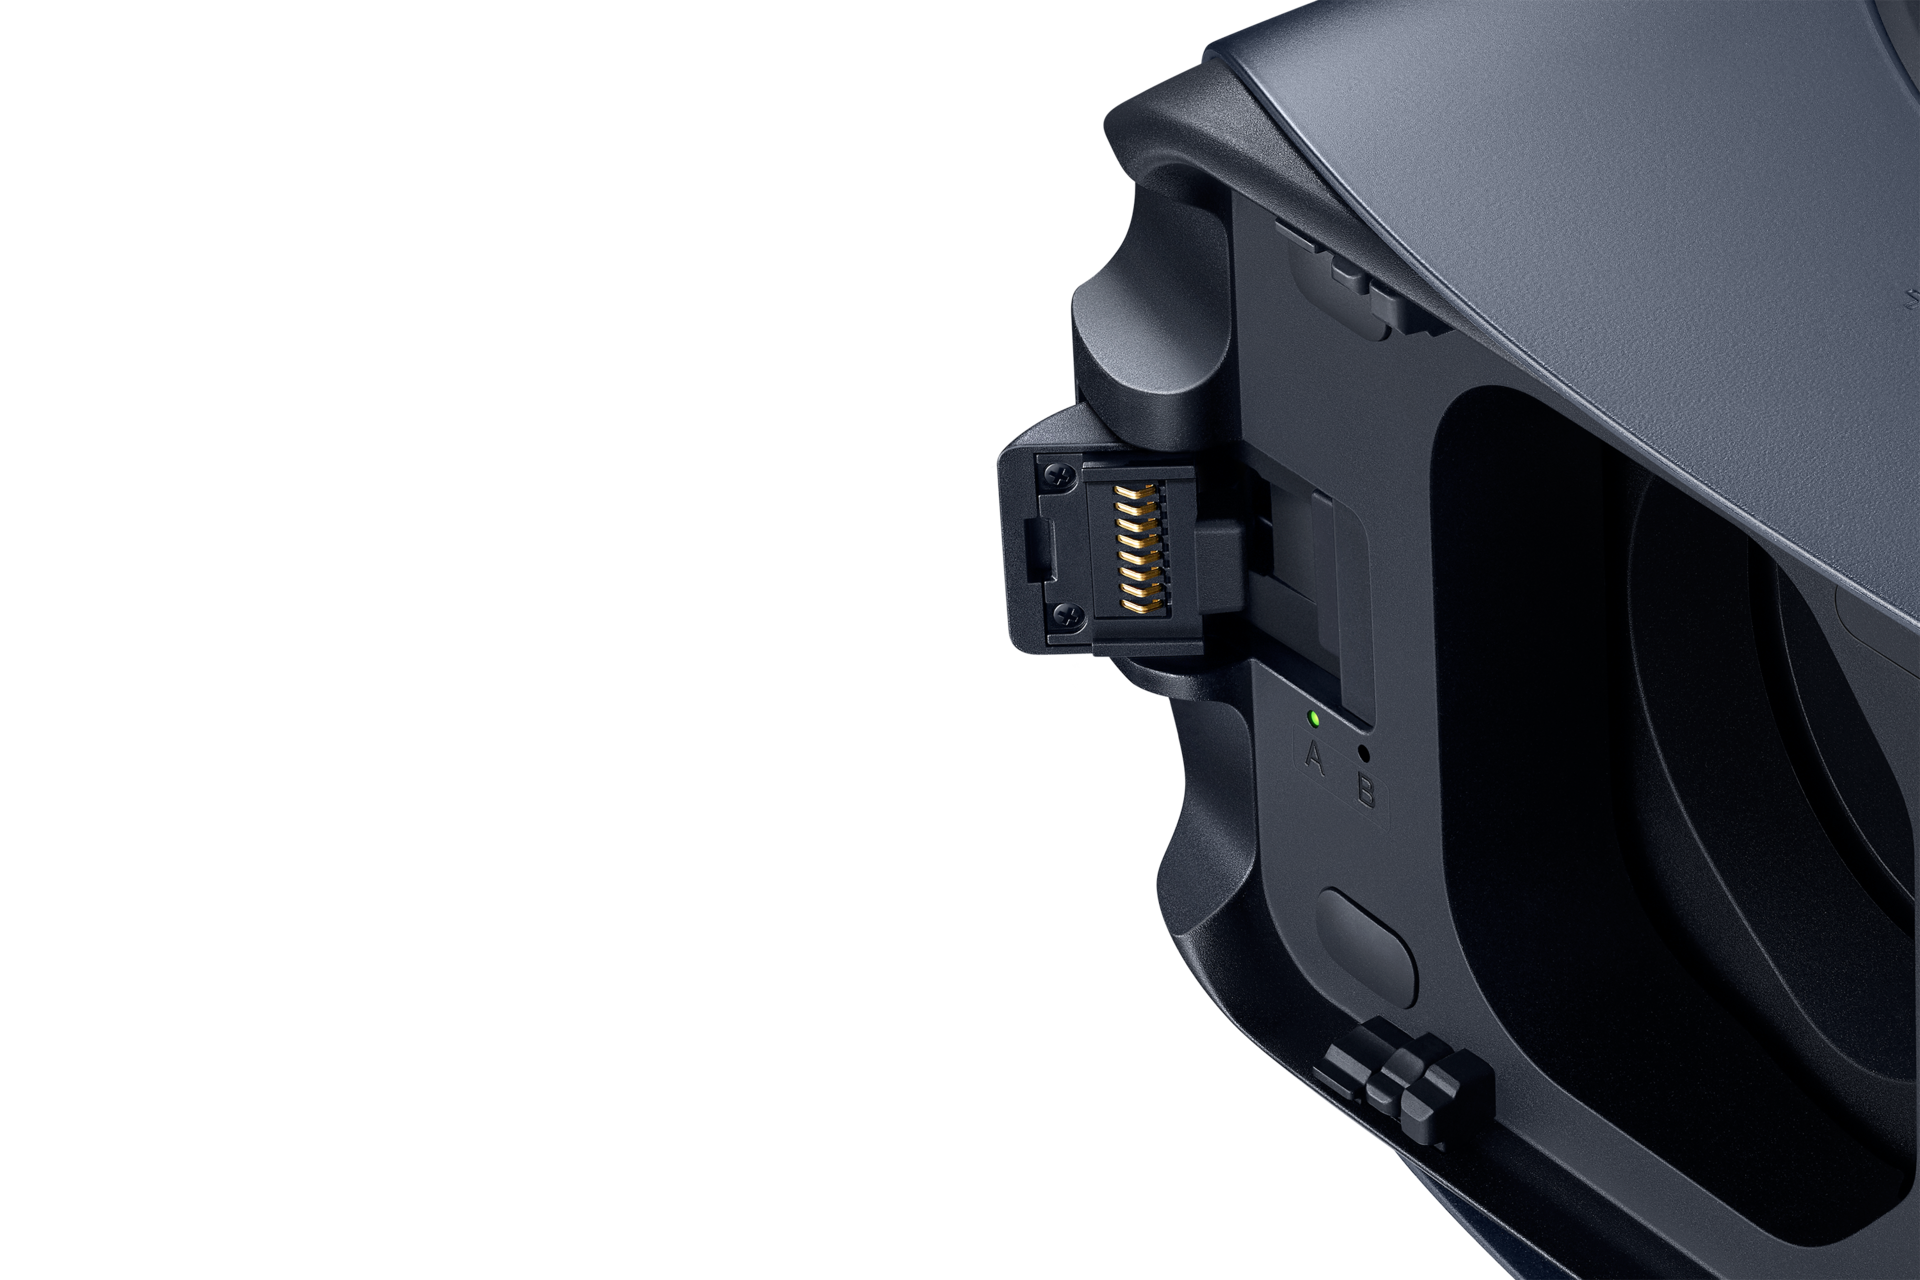 Vr type. Очки Gear VR Oculus Samsung. Samsung Oculus VR. Gear VR r323.